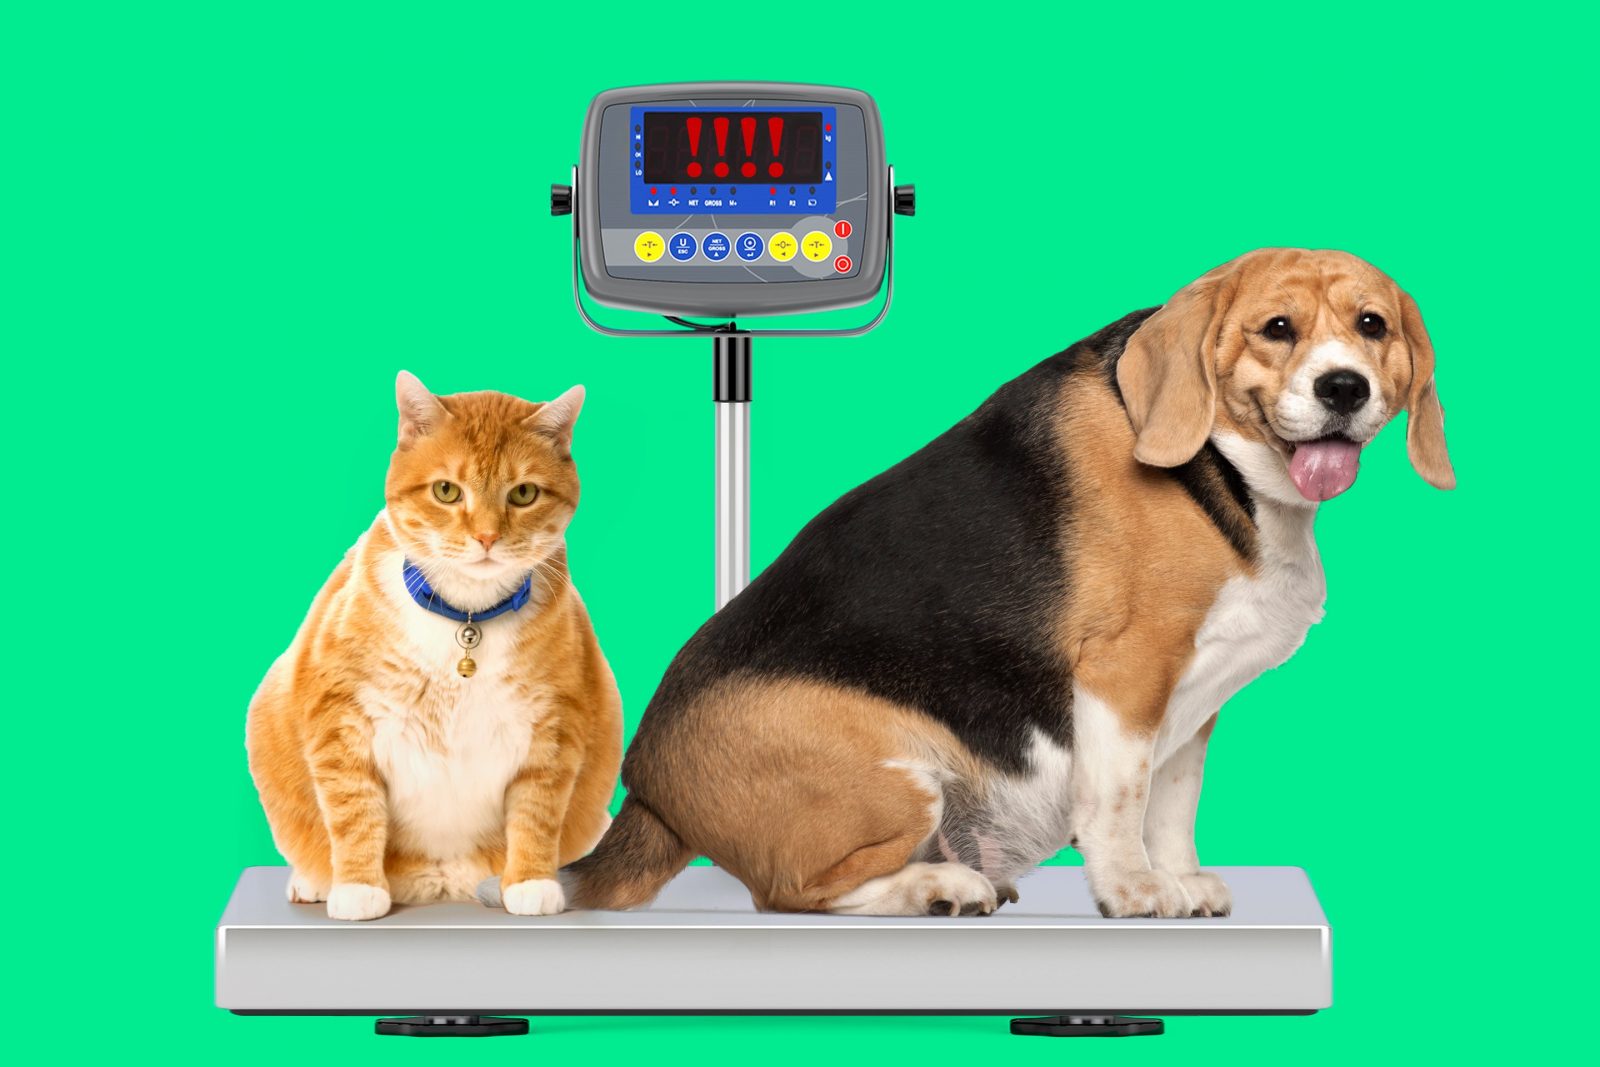 Cães e gatos obesos: como controlar e prevenir o ganho de peso em seu animal de estimação 1